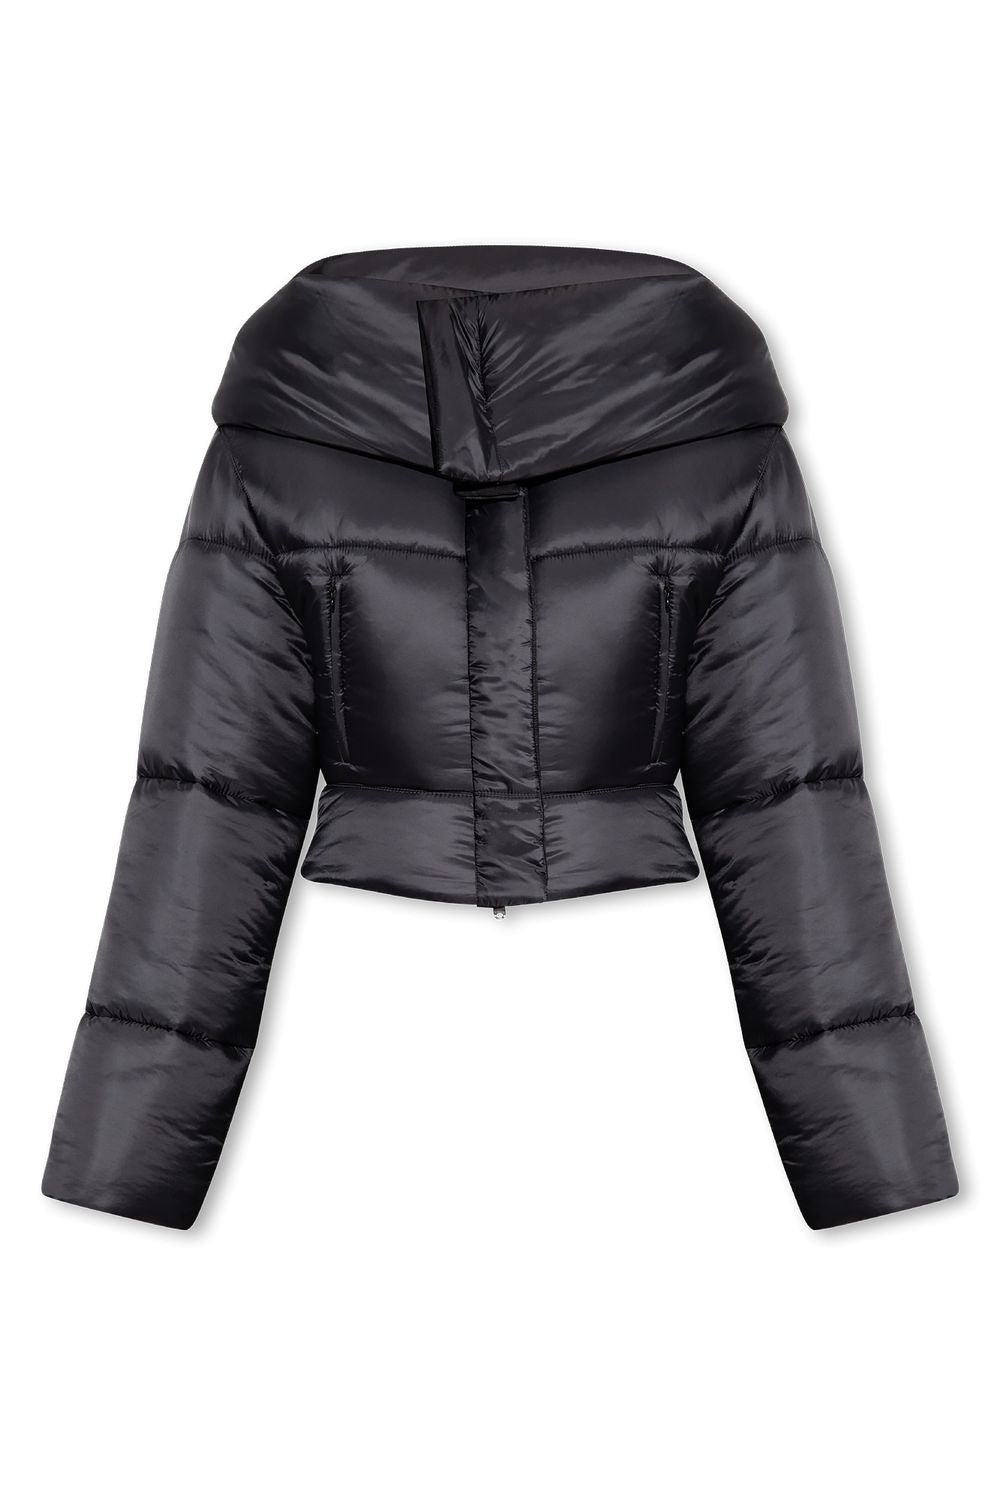 黑色短款保暖外套 - FW23系列